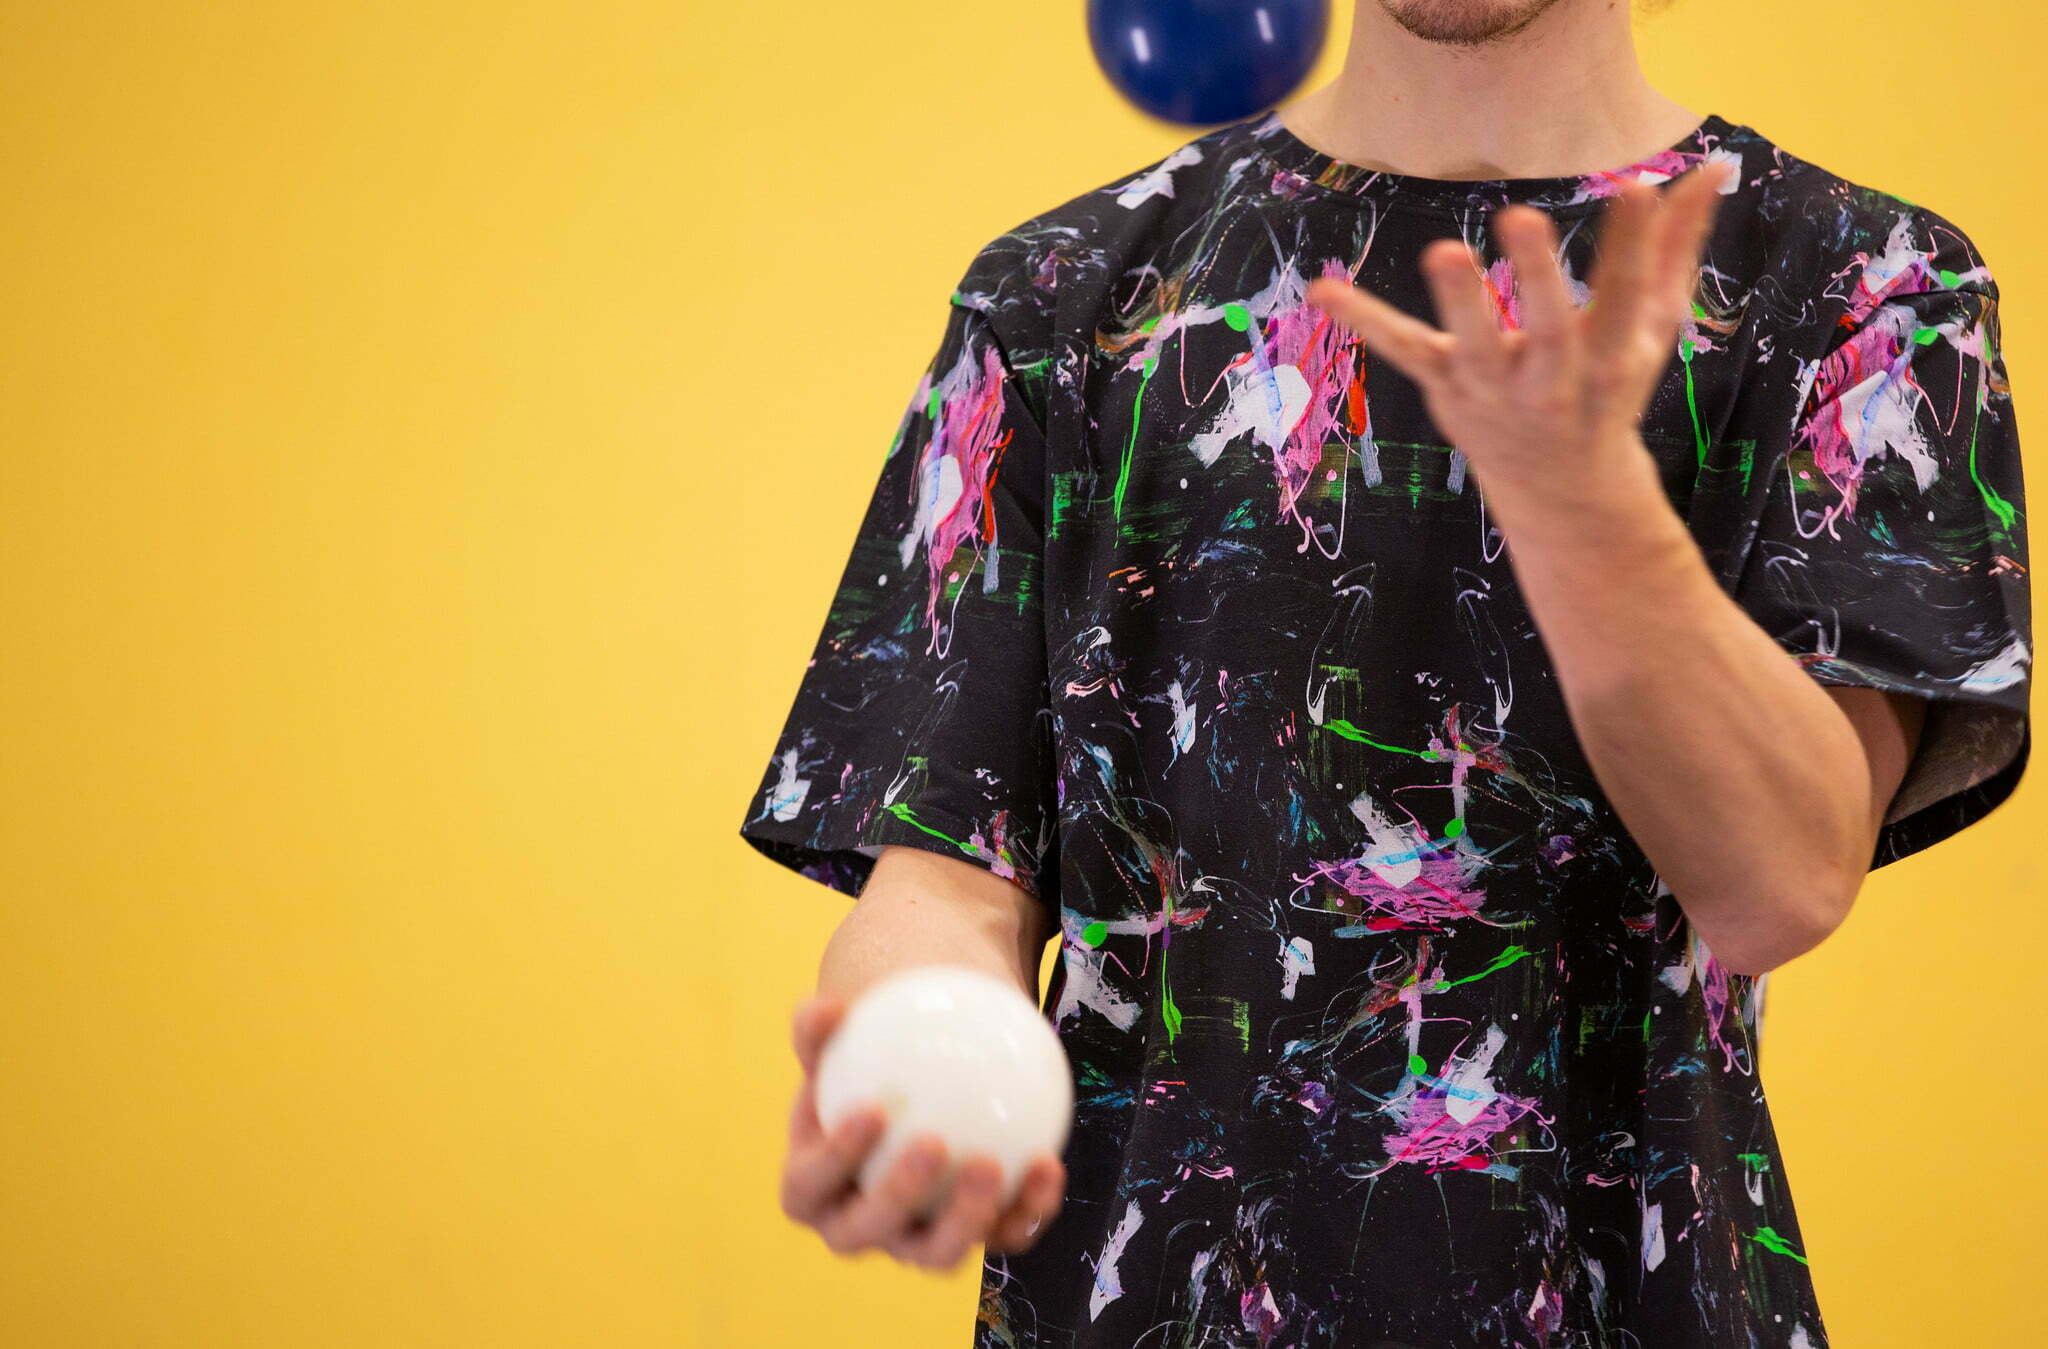 Kuvassa henkilö harjoittelee jongleerausta kahdella pallolla.